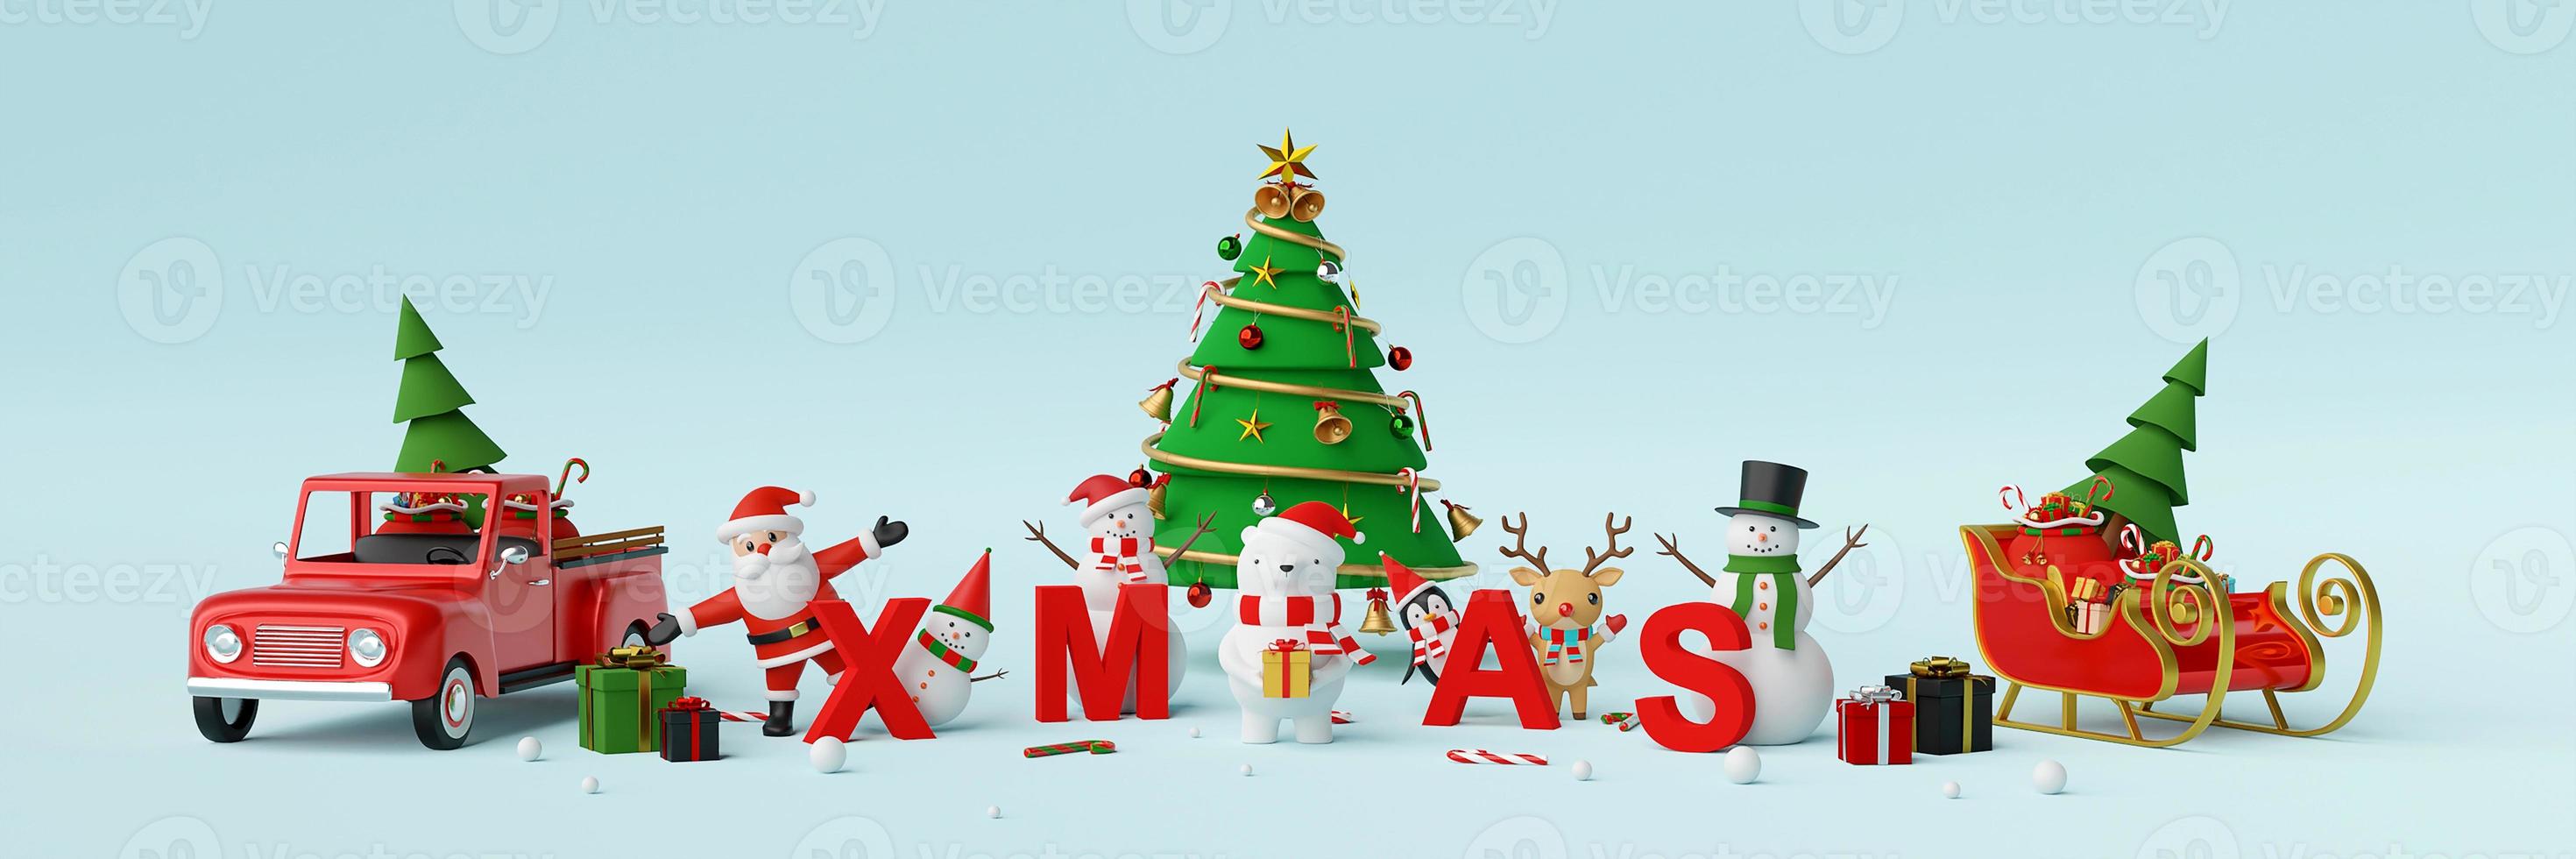 Frohe Weihnachten und ein glückliches neues Jahr, Bannerhintergrund von Weihnachtsmann und Weihnachtsfigur mit Buchstaben Weihnachten, 3D-Rendering foto